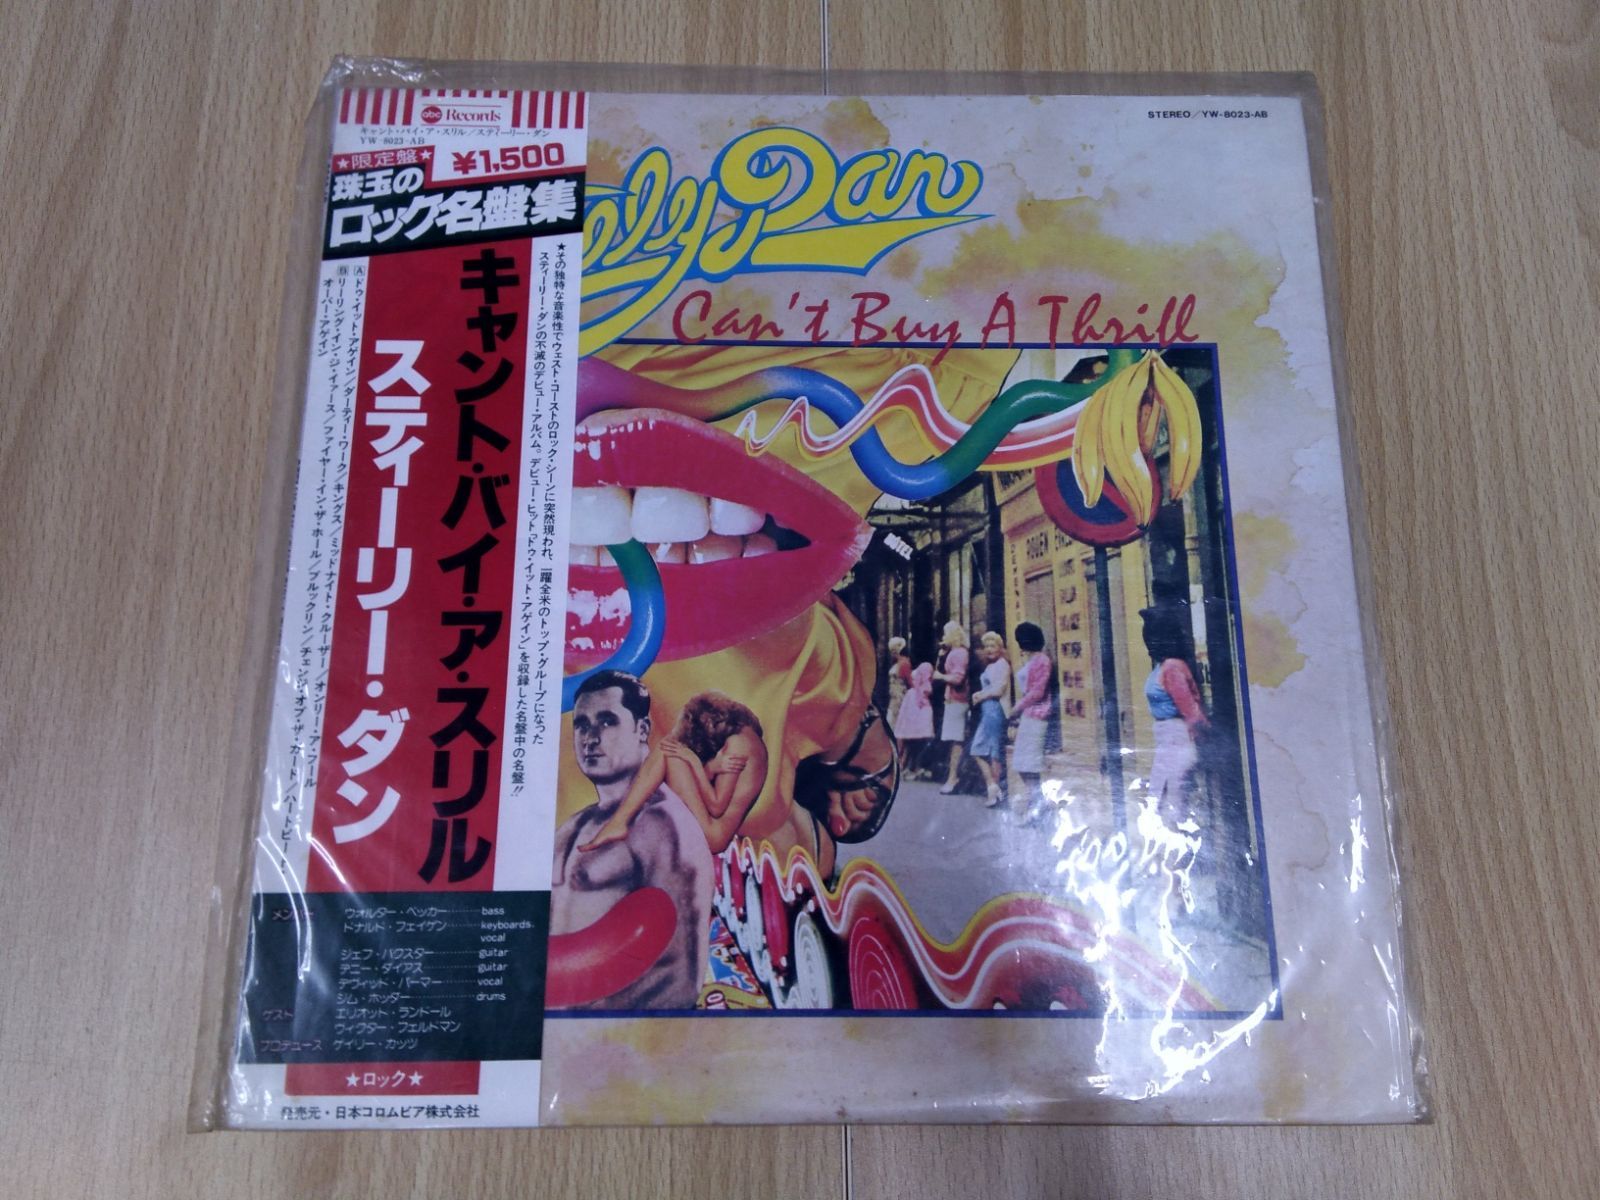 LPレコード スティーリー・ダン キャント・バイ・ア・スリル - メルカリ